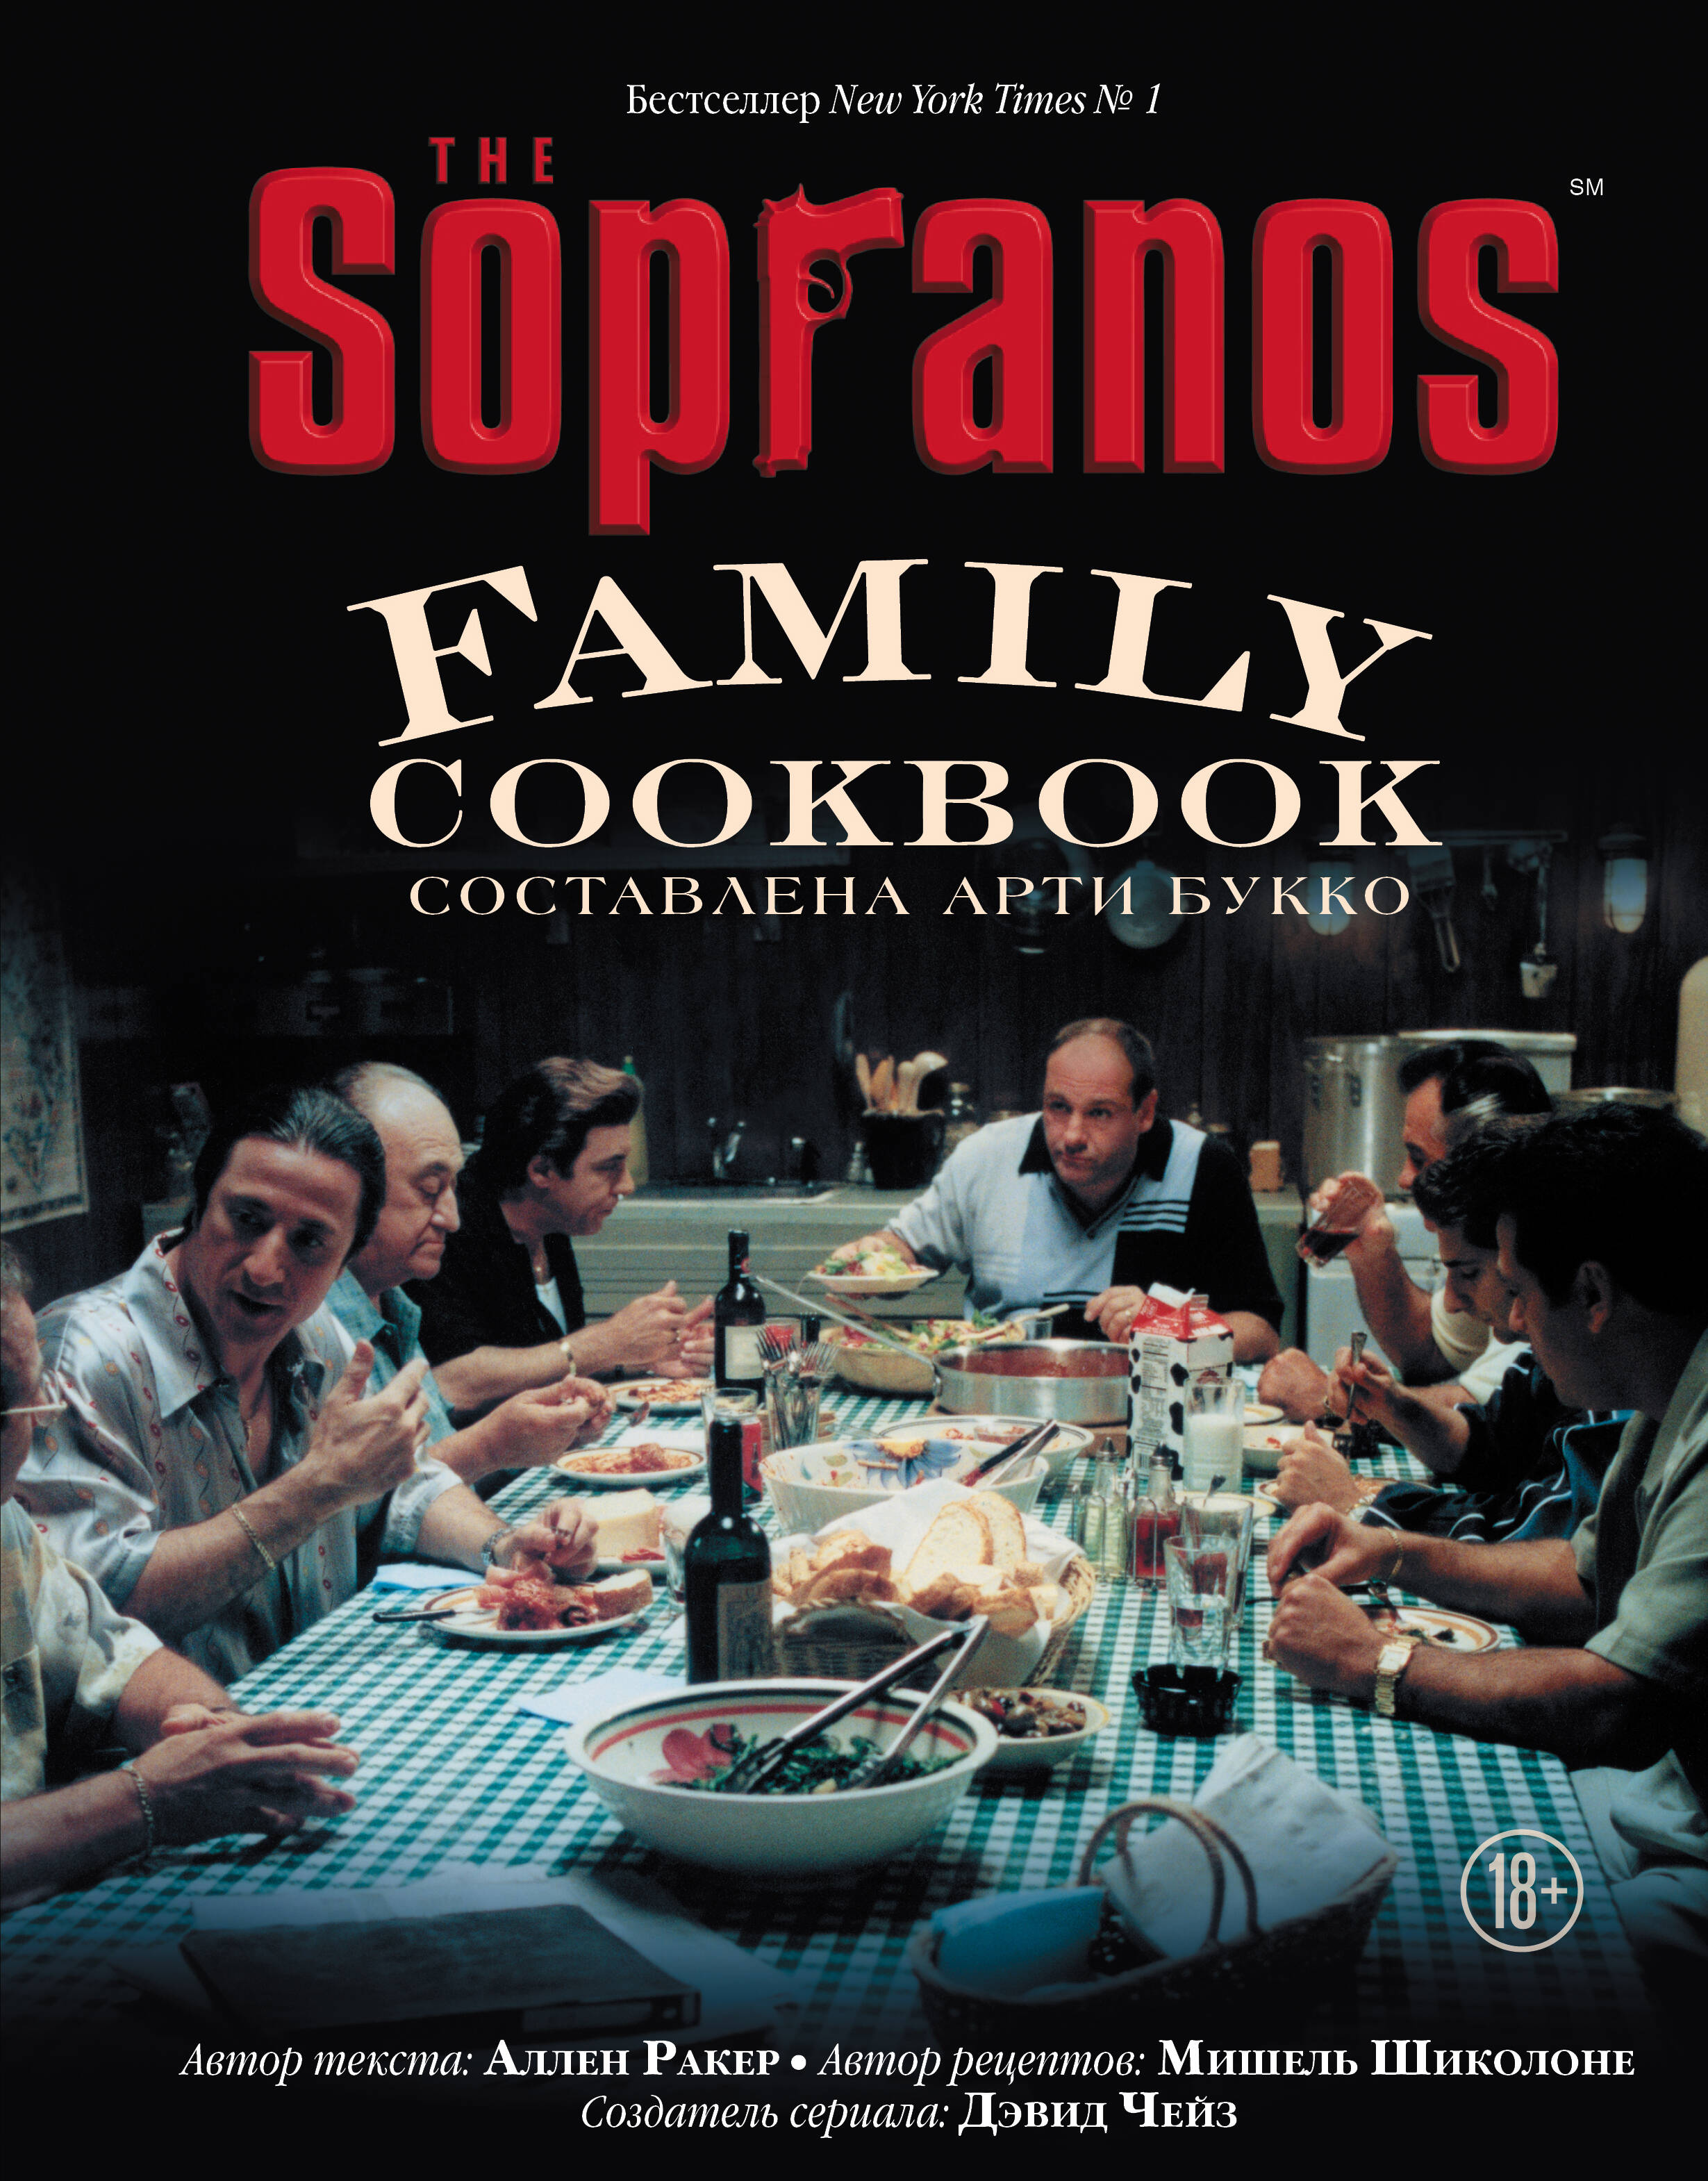 The Sopranos Family Cookbook литература эксмо the sopranos family cookbook кулинарная книга клана сопрано 18